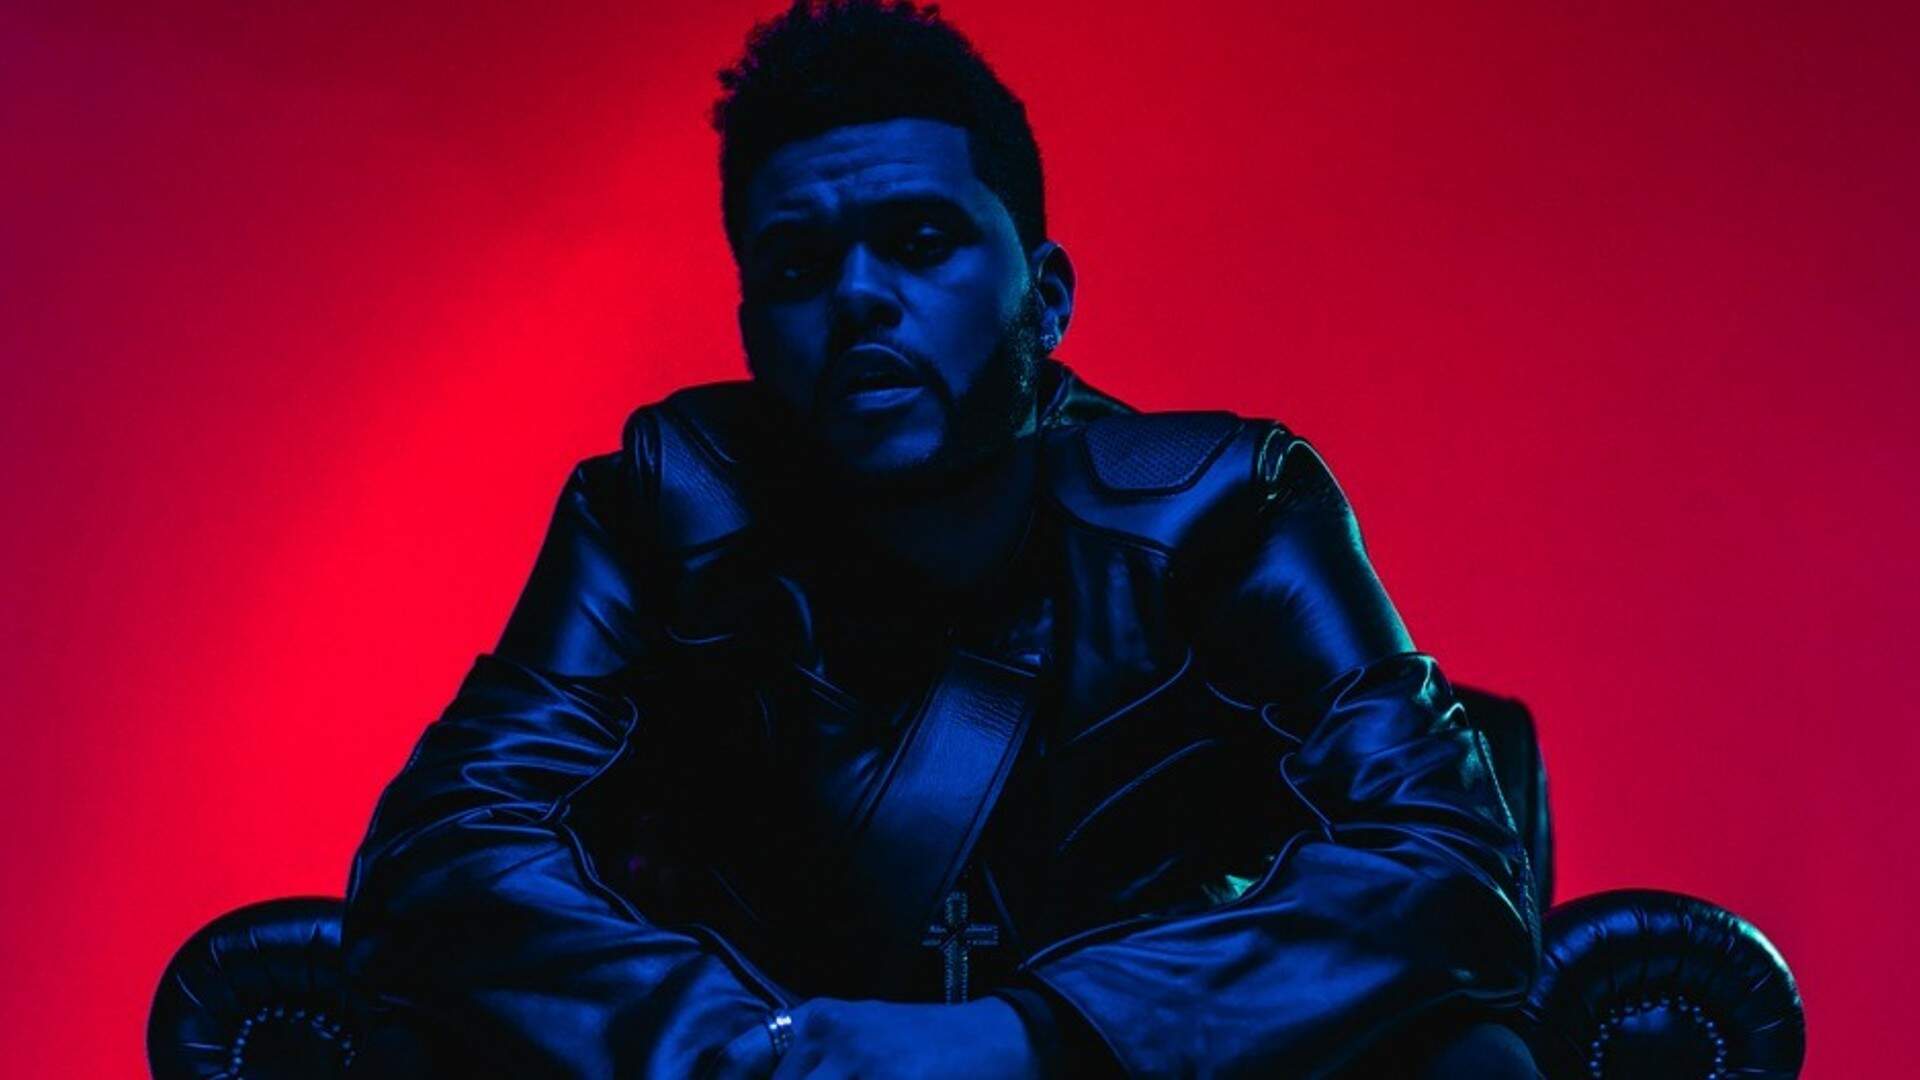 Impulsionado pela parceria com Ariana Grande, The Weeknd relança álbum de sucesso com faixas extras